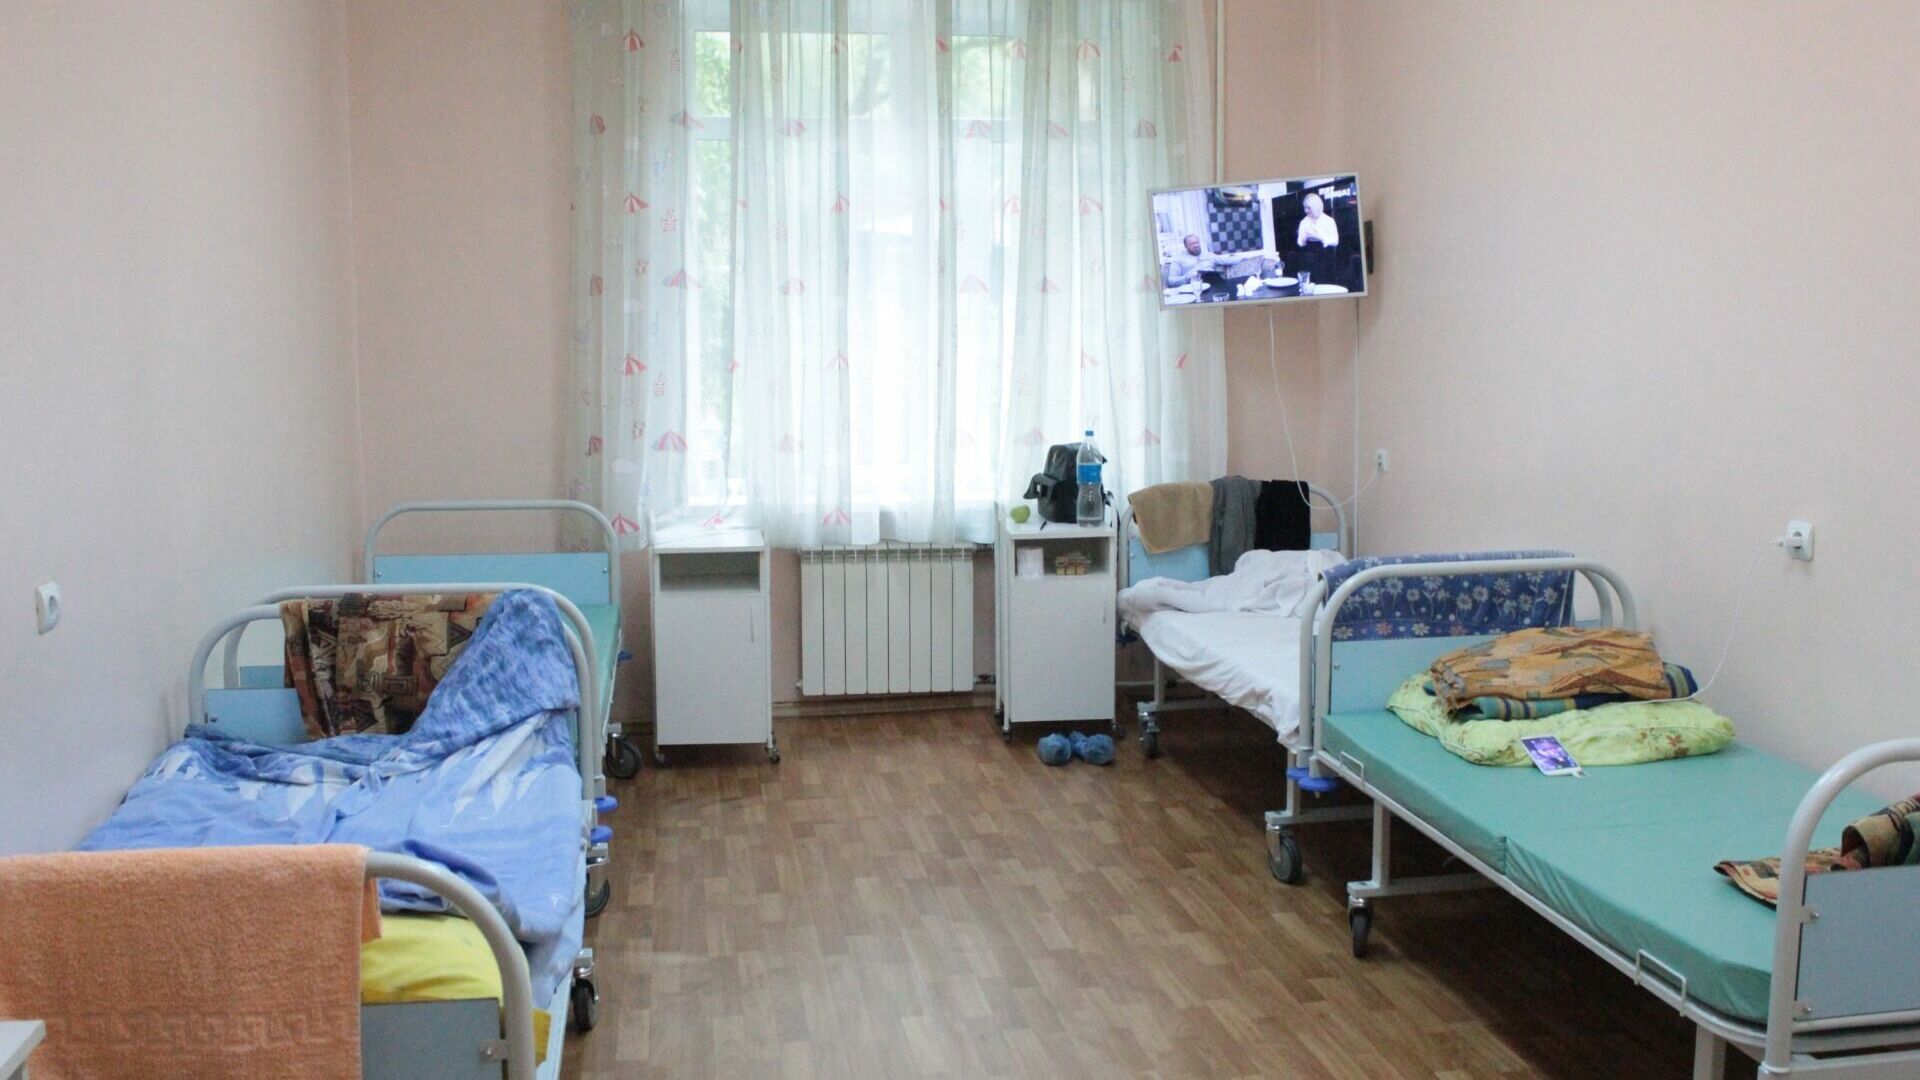 Пациентка недовольна санитарным состоянием тюменской женской консультации 